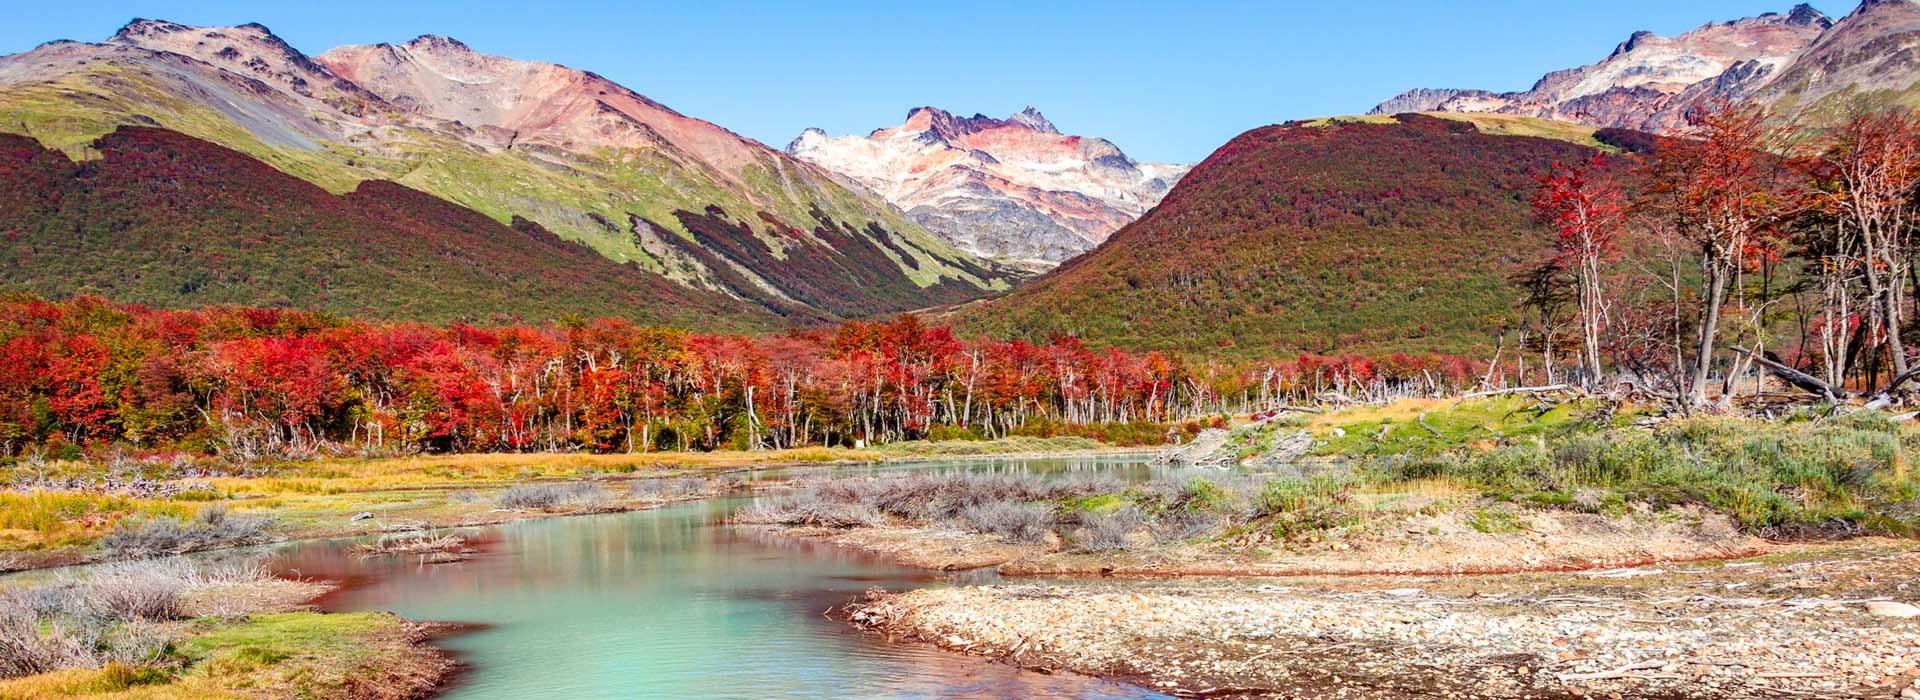 Visiter Le Parc national de la Terre de Feu  - Argentine